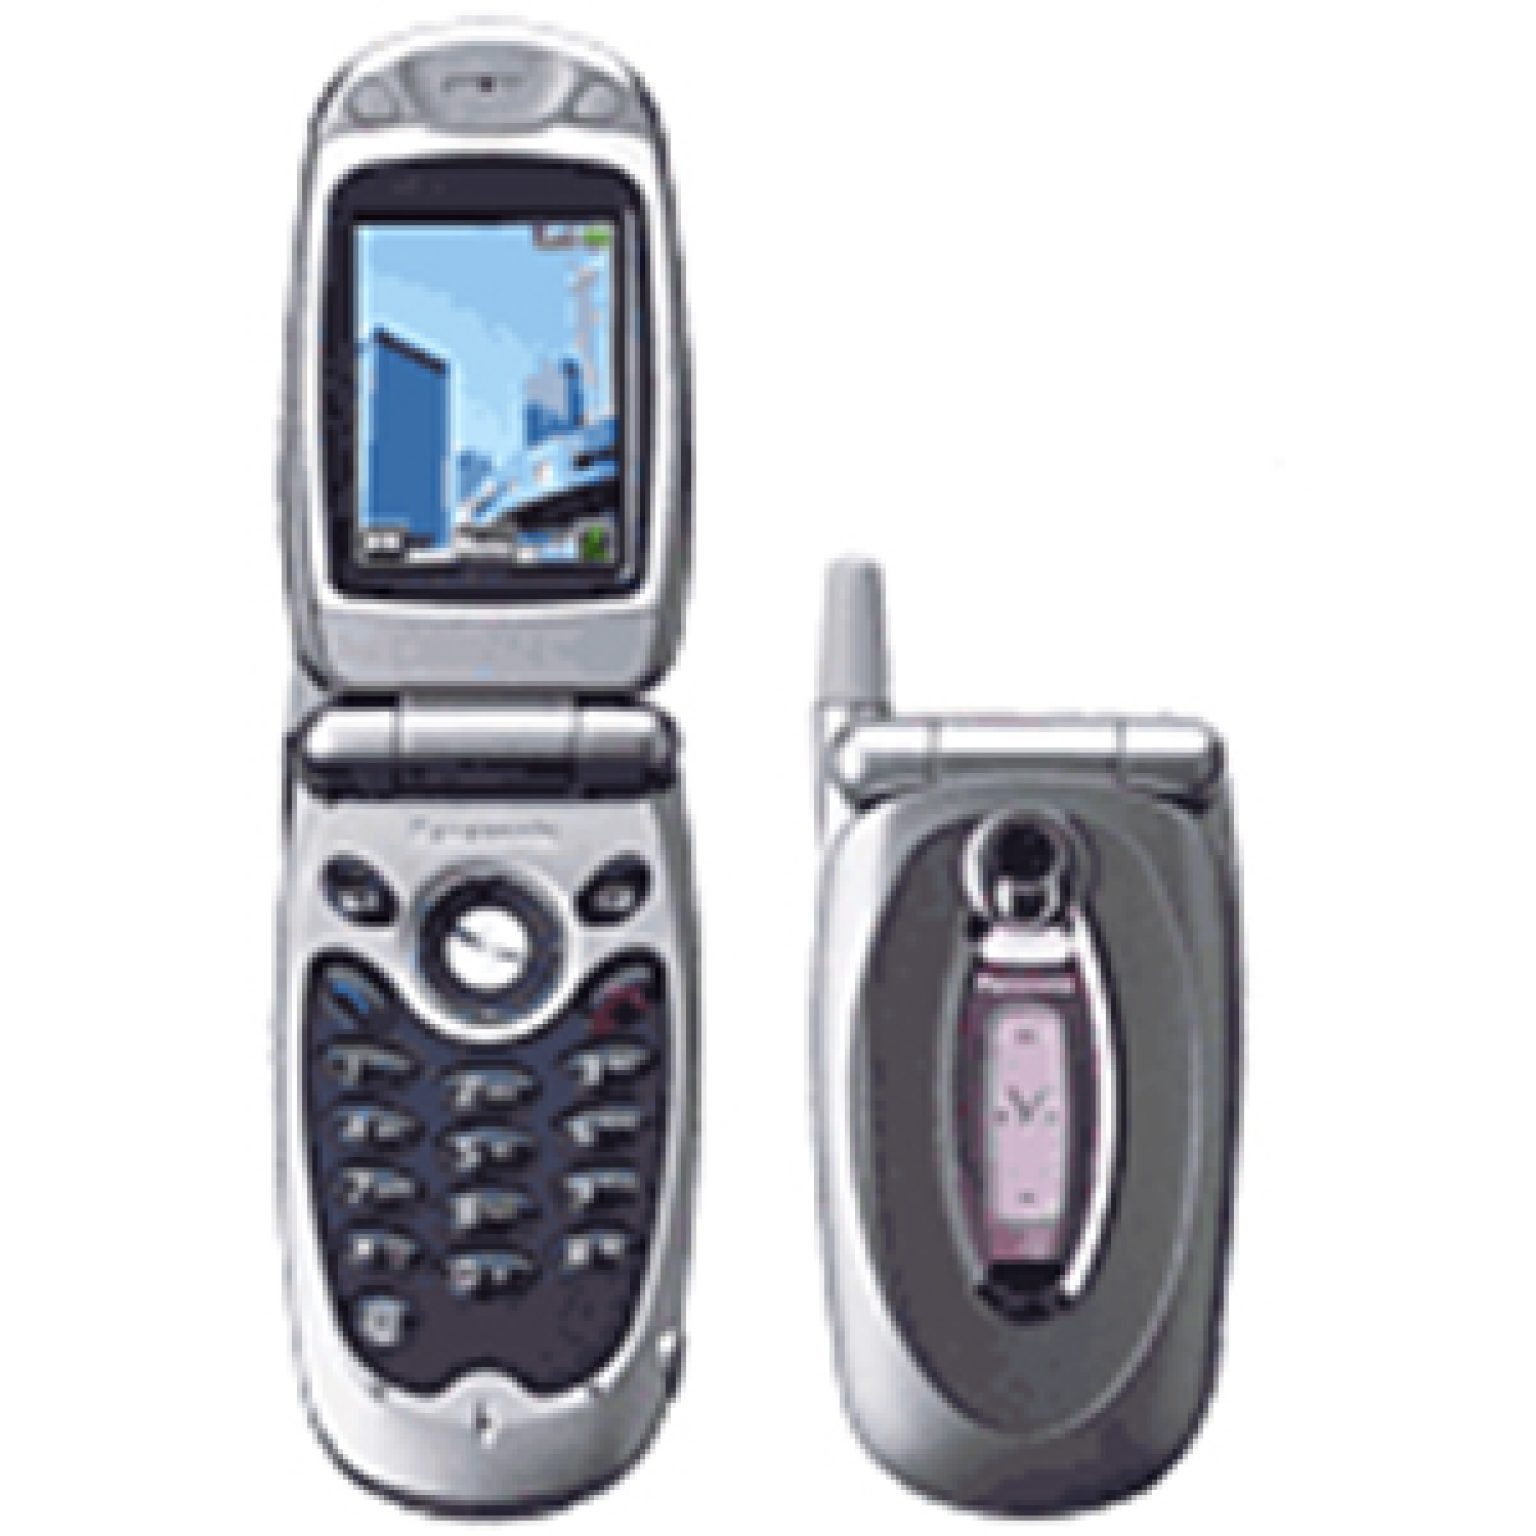 Телефон Panasonic x70